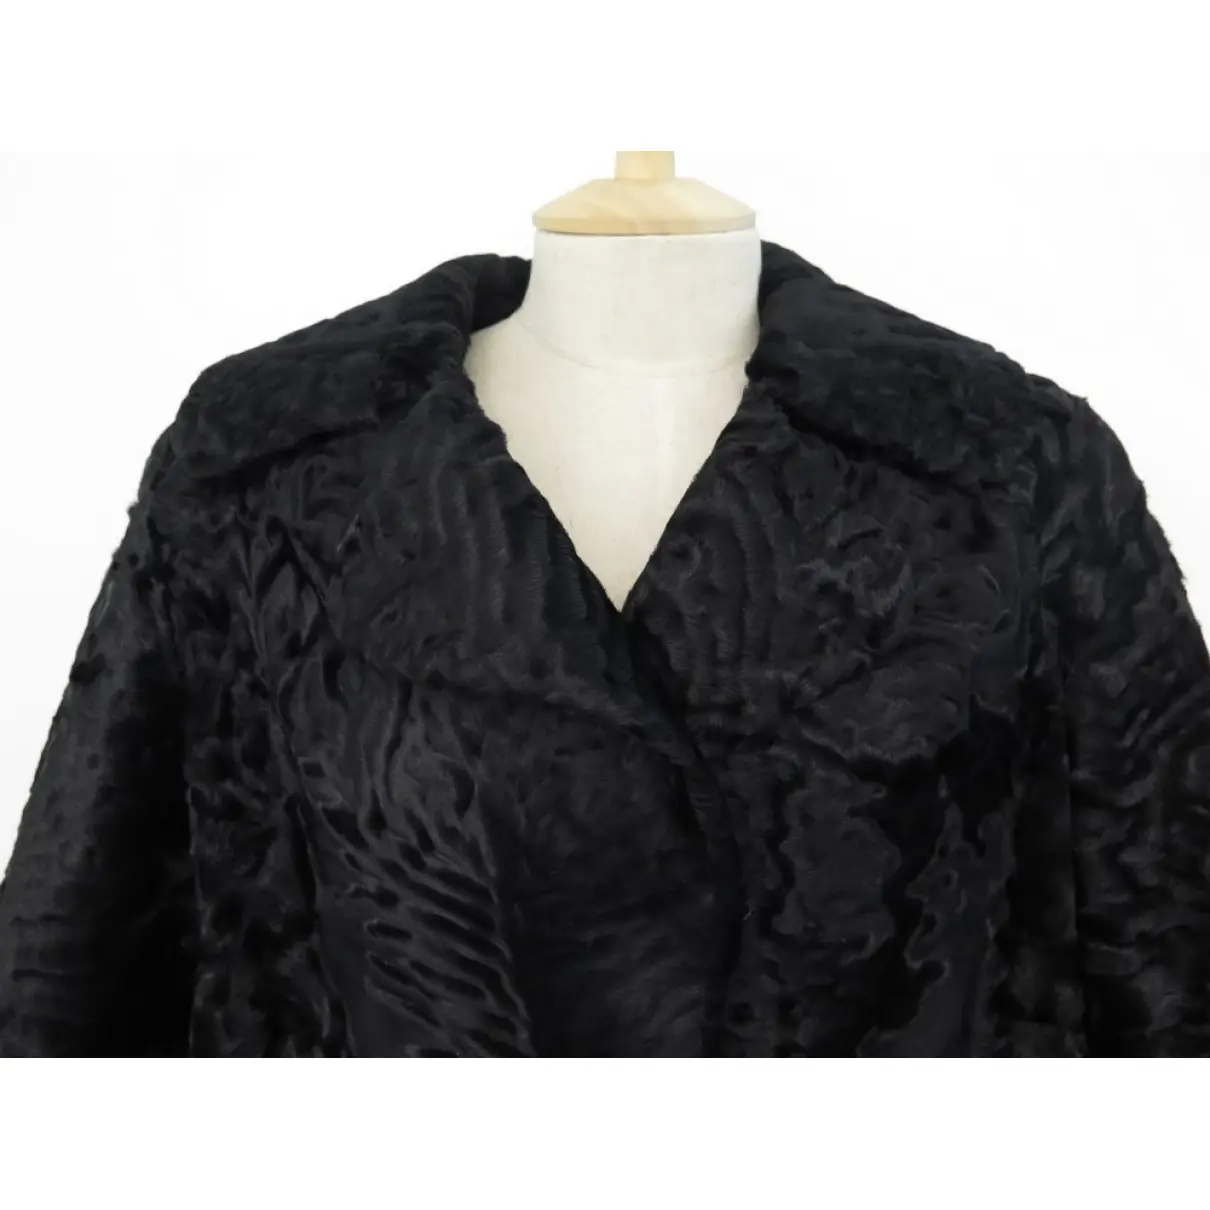 Buy Yves Saint Laurent Coat online